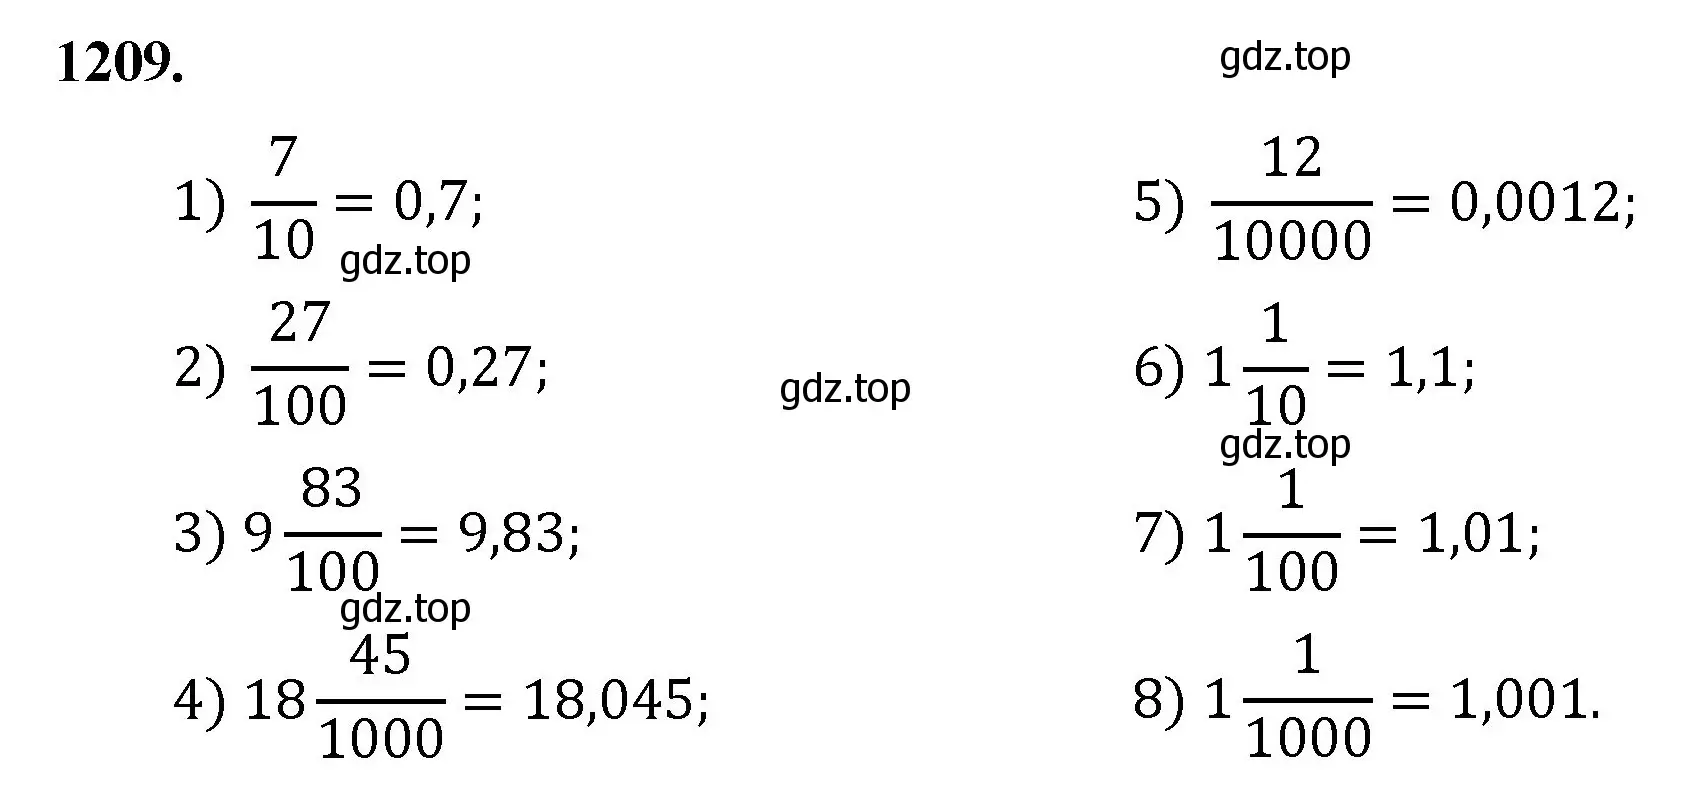 Решение номер 1209 (страница 269) гдз по математике 5 класс Мерзляк, Полонский, учебник